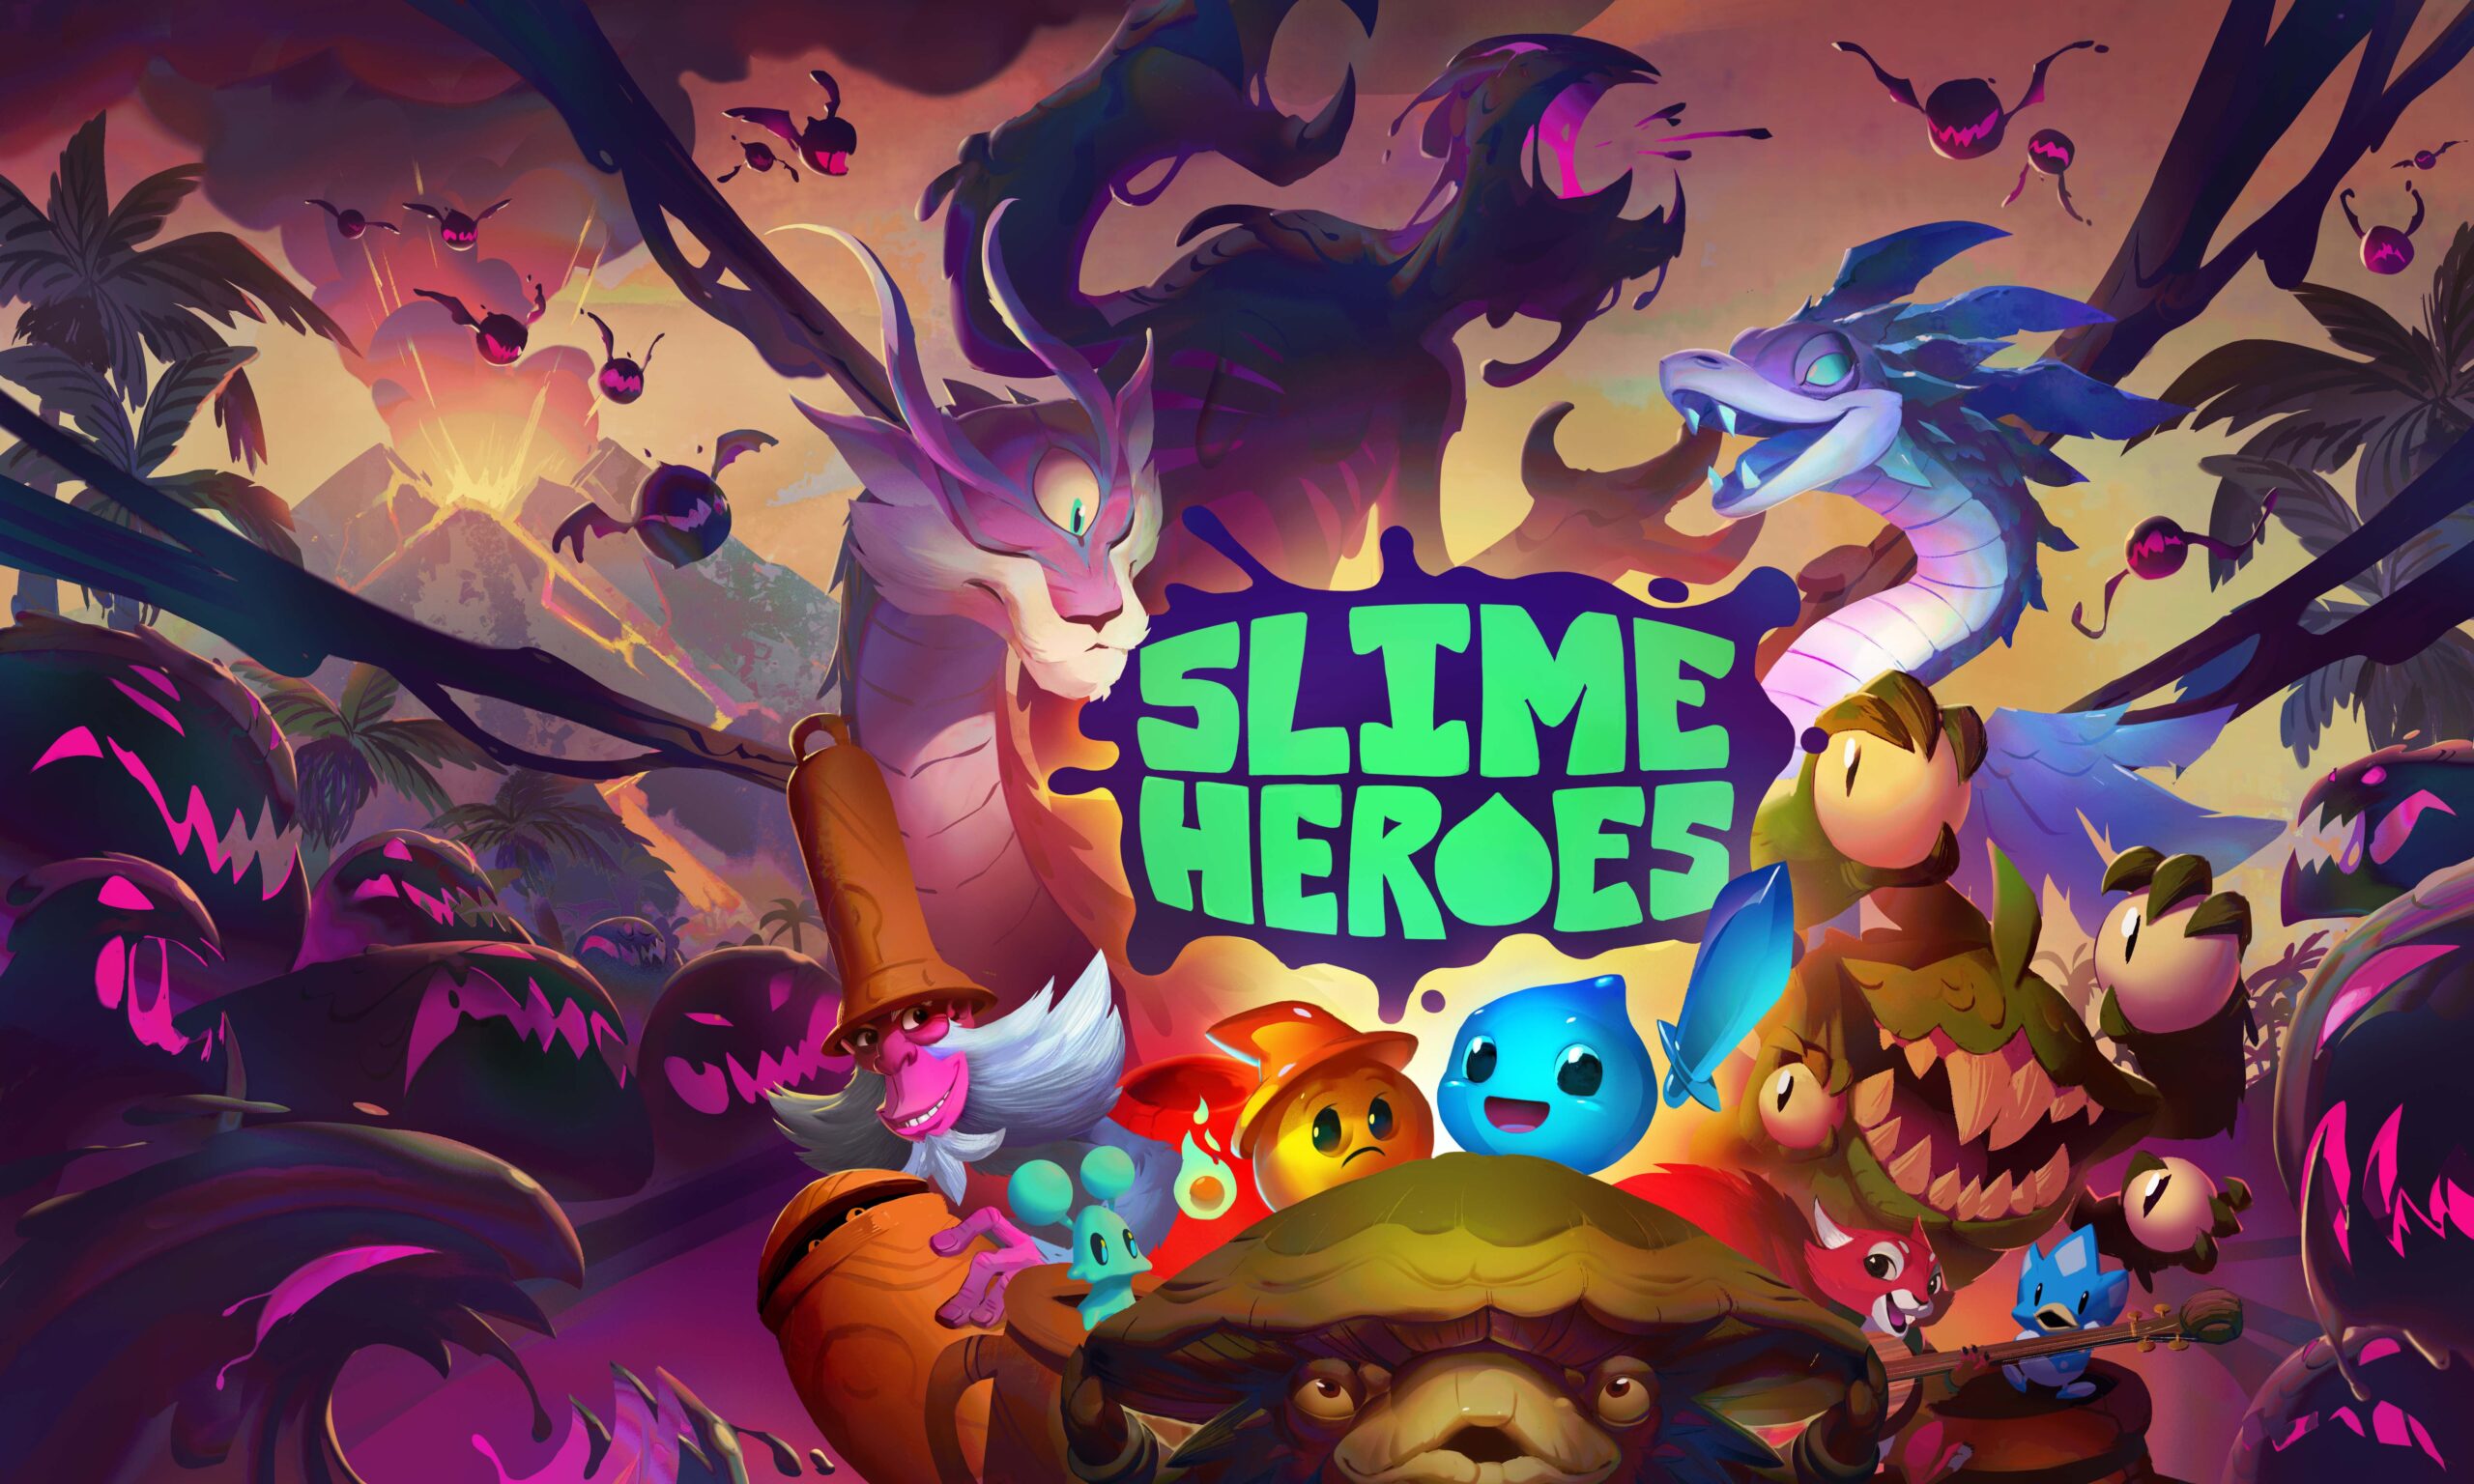 Slime Heroes